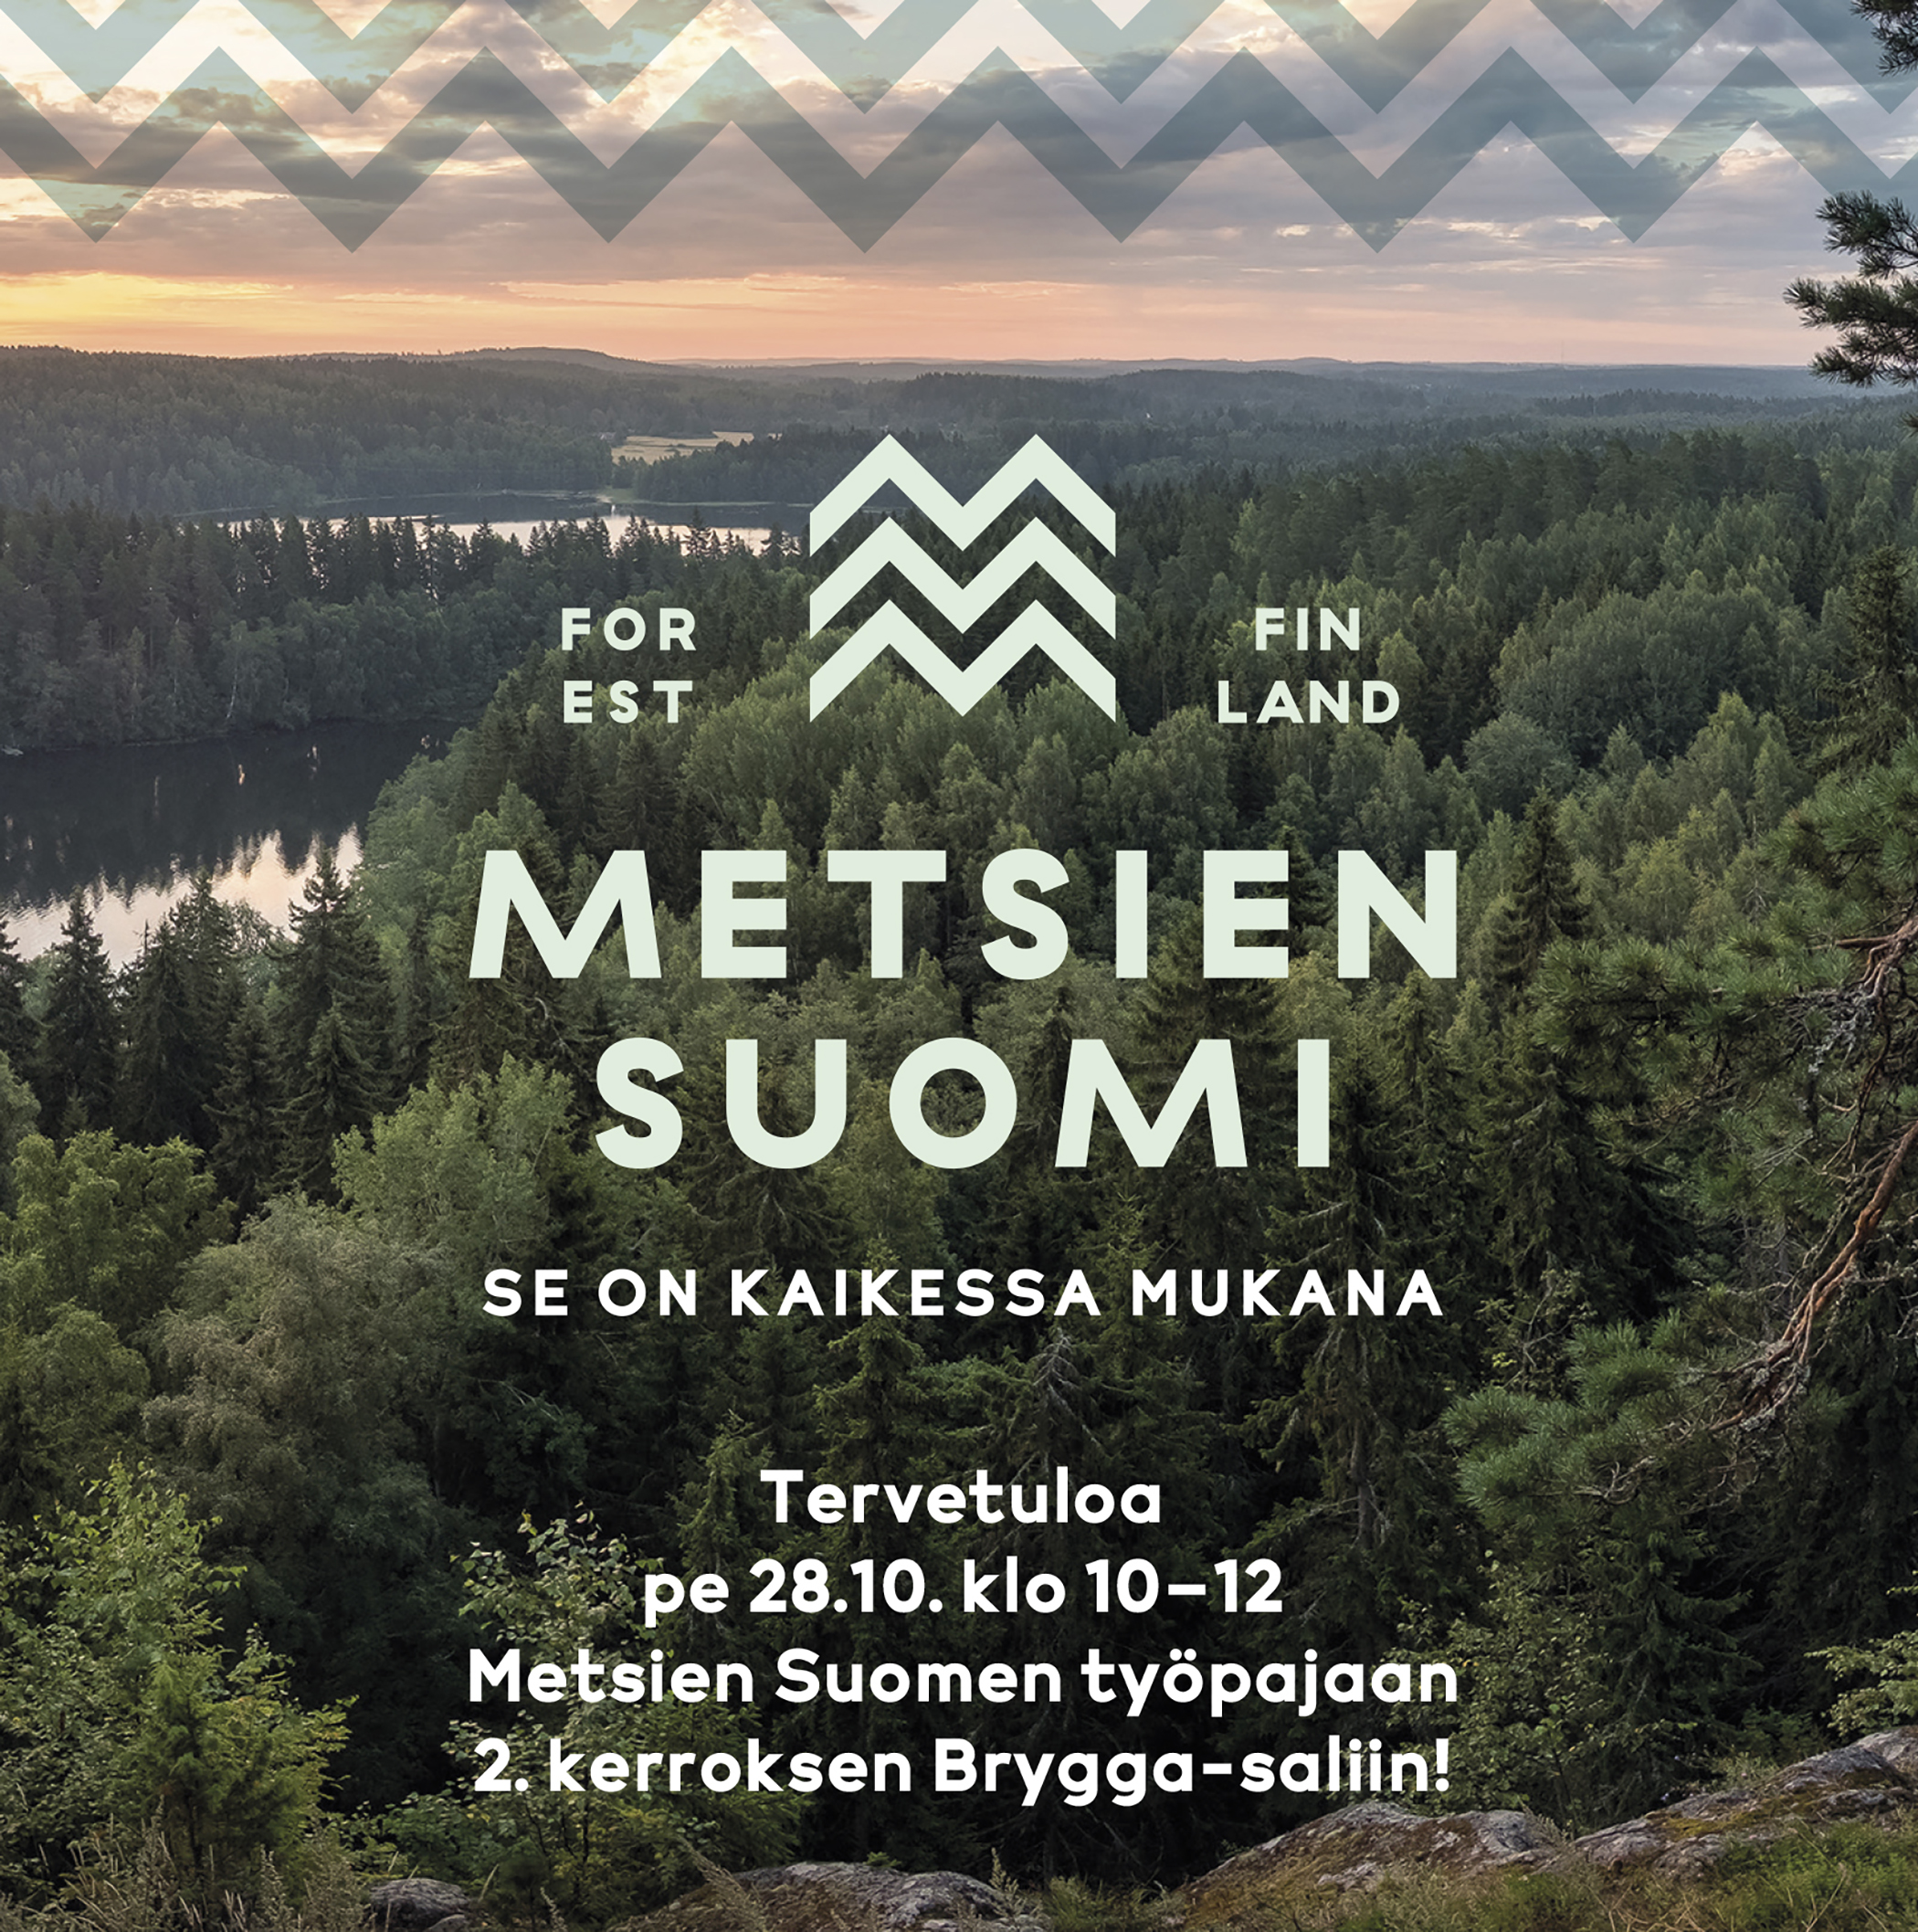 Kuinka viestit vaikuttavasti – osallistu Metsien Suomen työpajaan  Metsäpäivillä  - Metsien Suomi